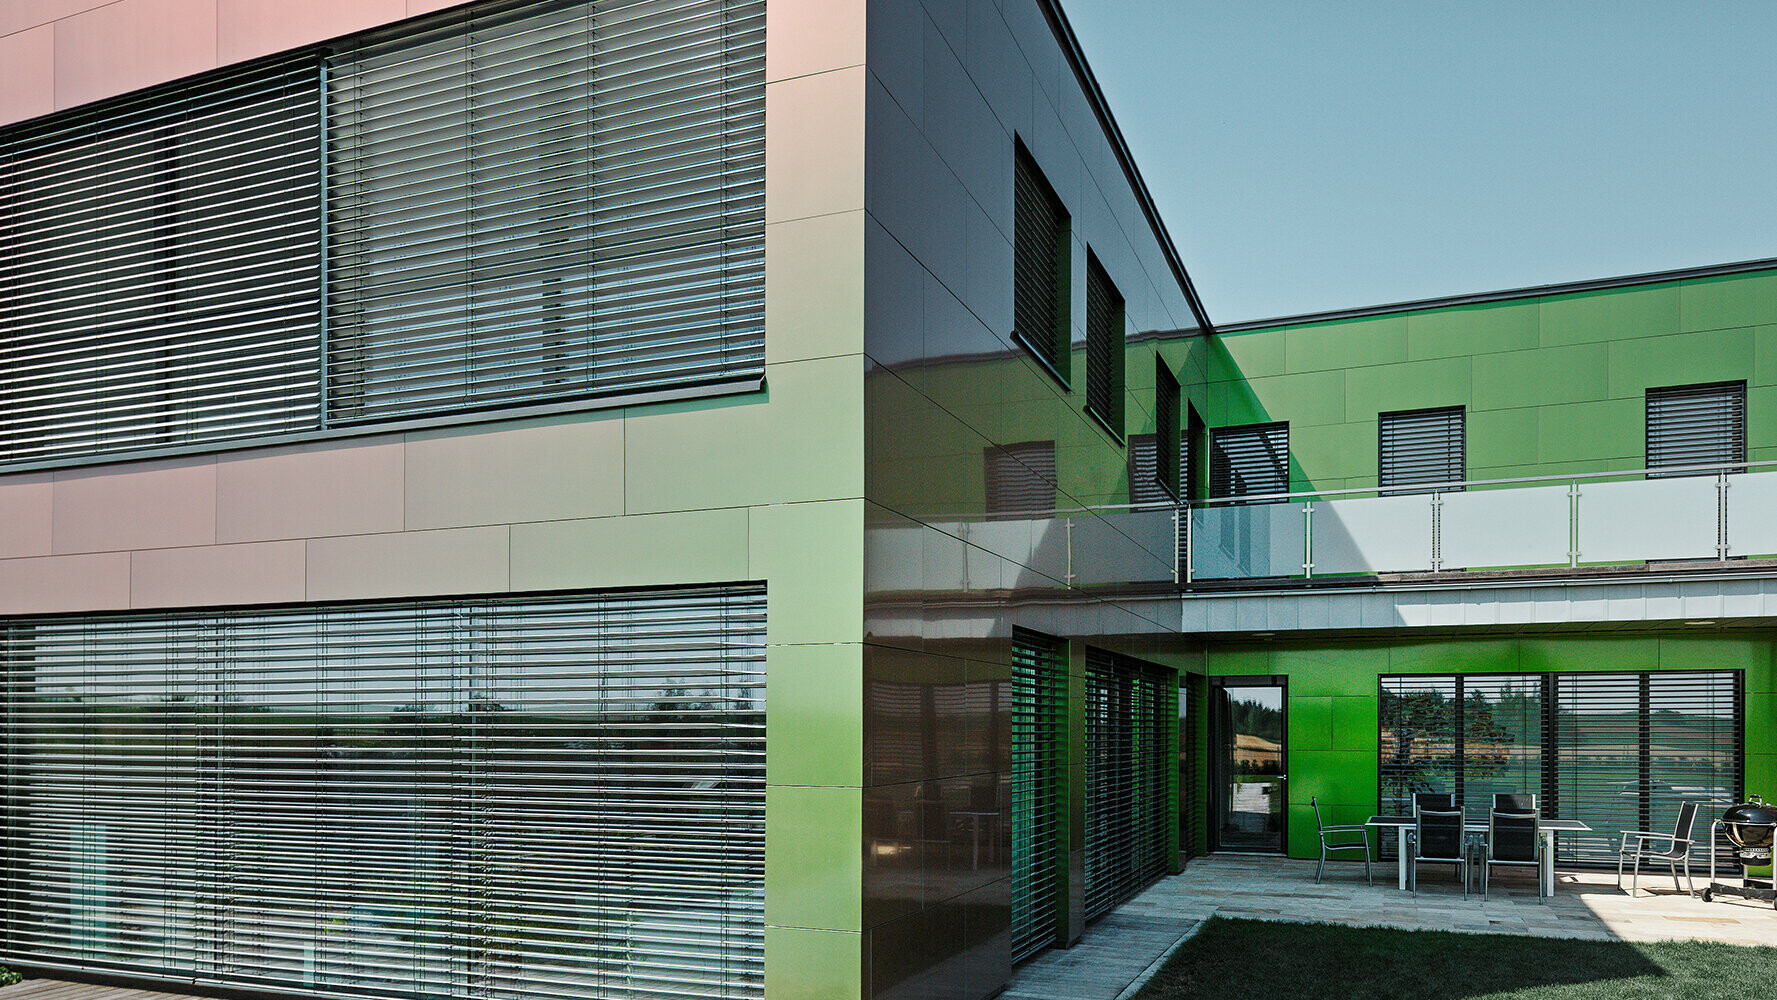 Ennek a lakóépületnek a homlokzatát kompozit lemezek fedik, amelyek a fénytől és a perspektívától függően barna, zöld vagy sötétlila színt adnak az épületnek.